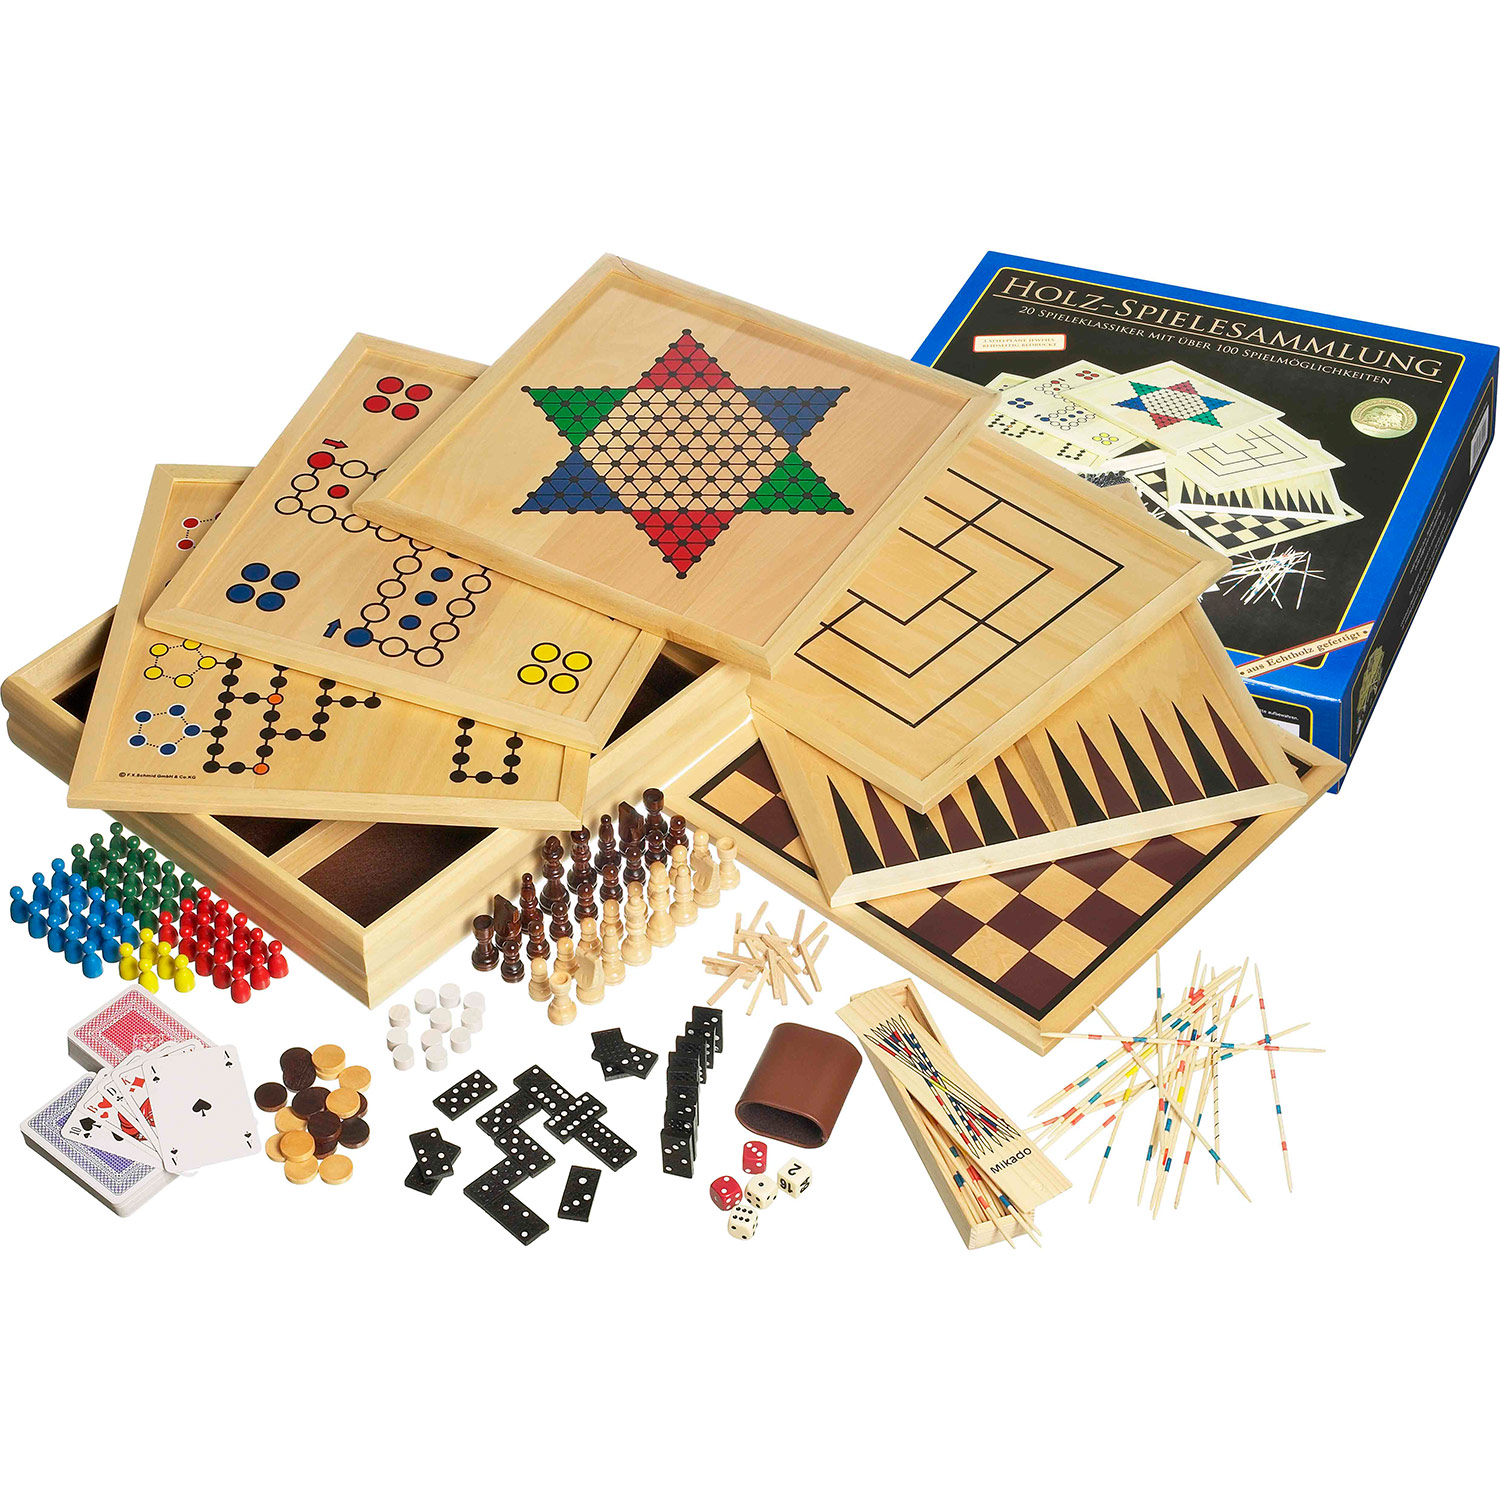 Philos wooden game set Compendium 100